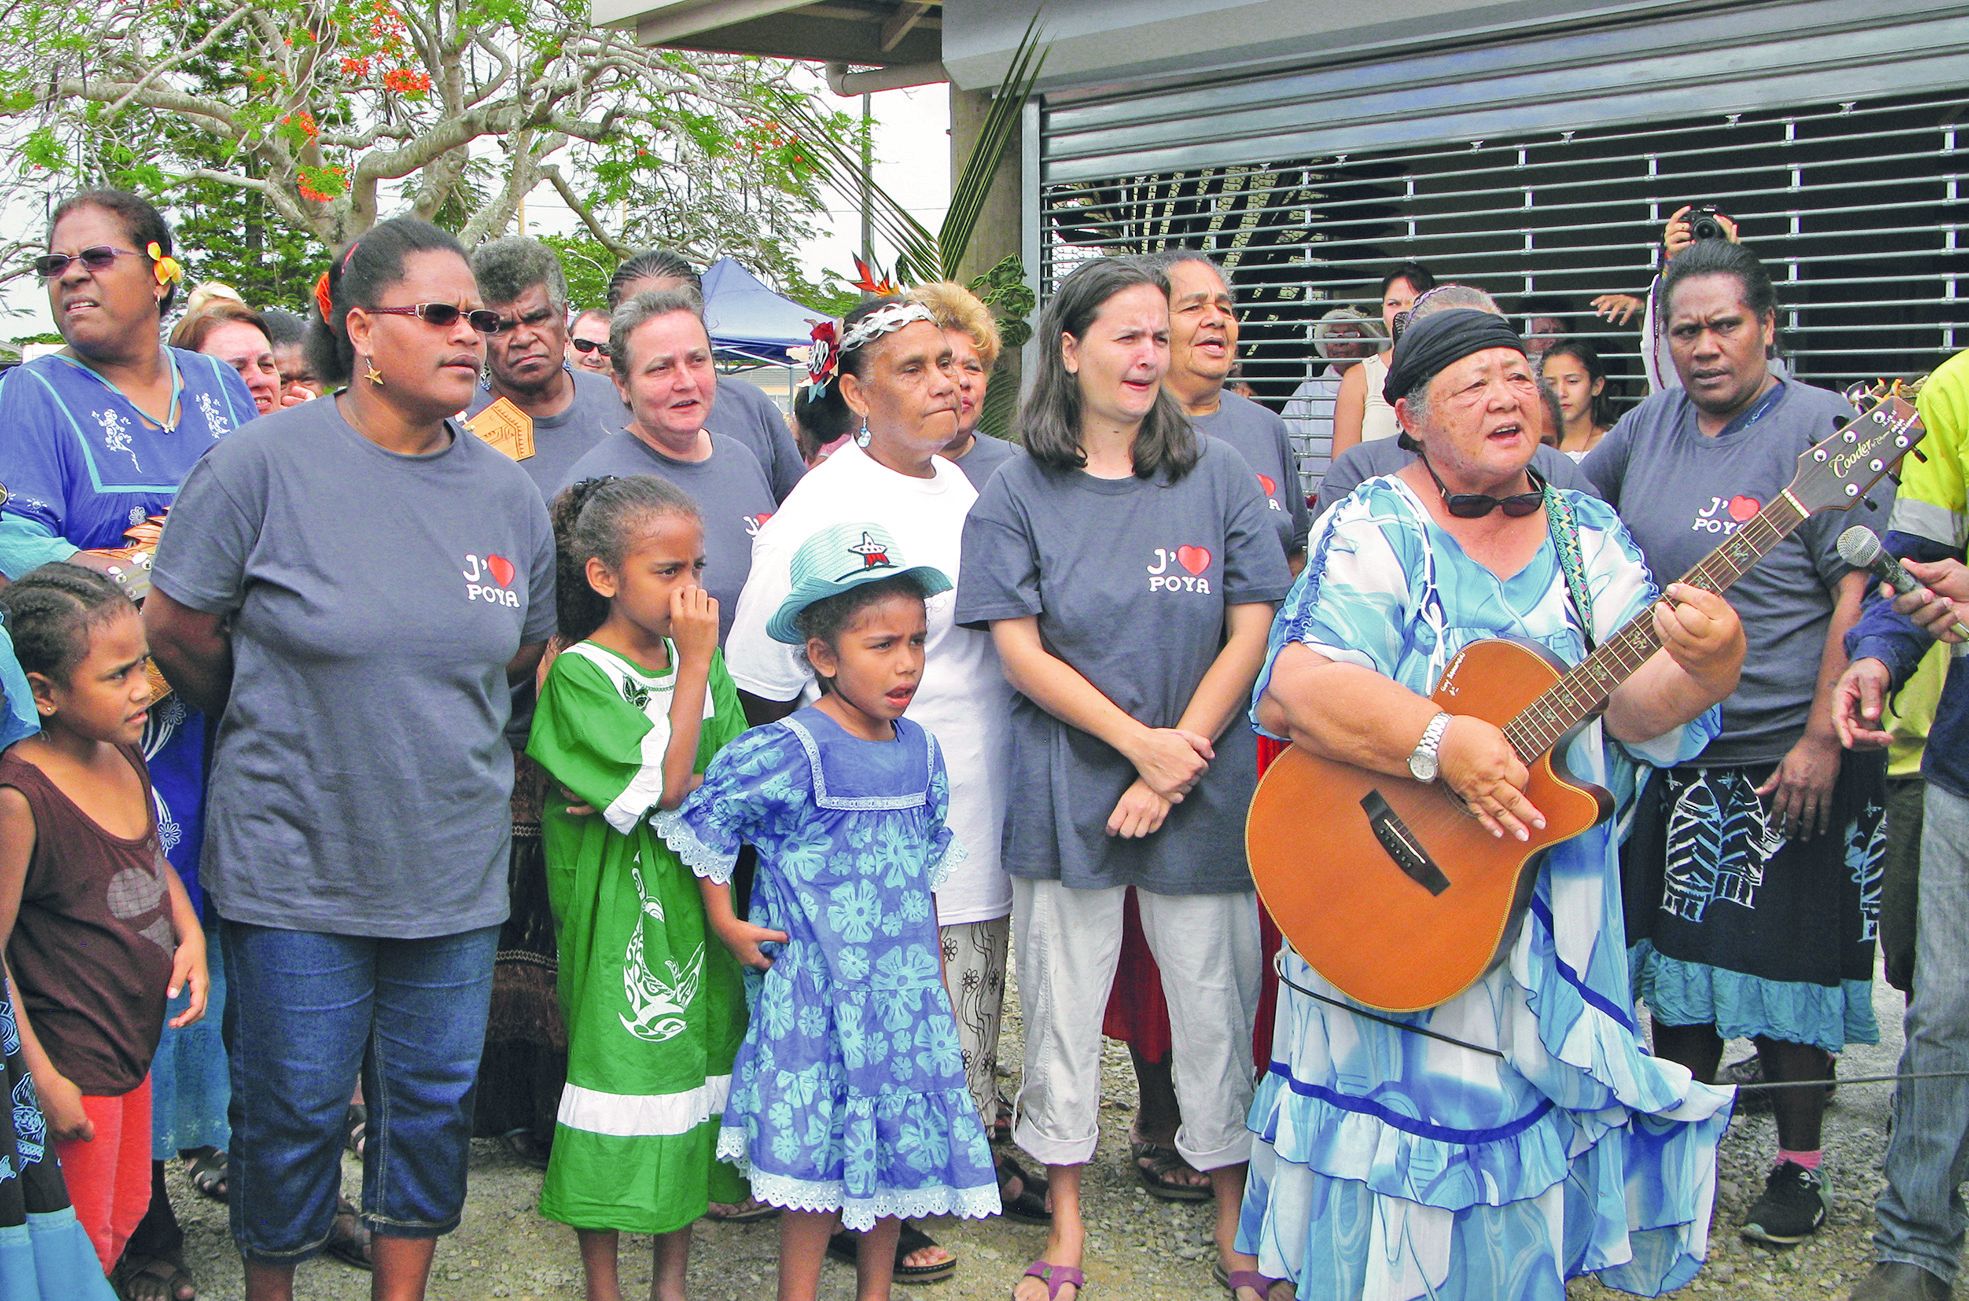 Les femmes du marché produisent, vendent, et chantent avec leur présidente, Danielle Sakoumory, à la guitare.